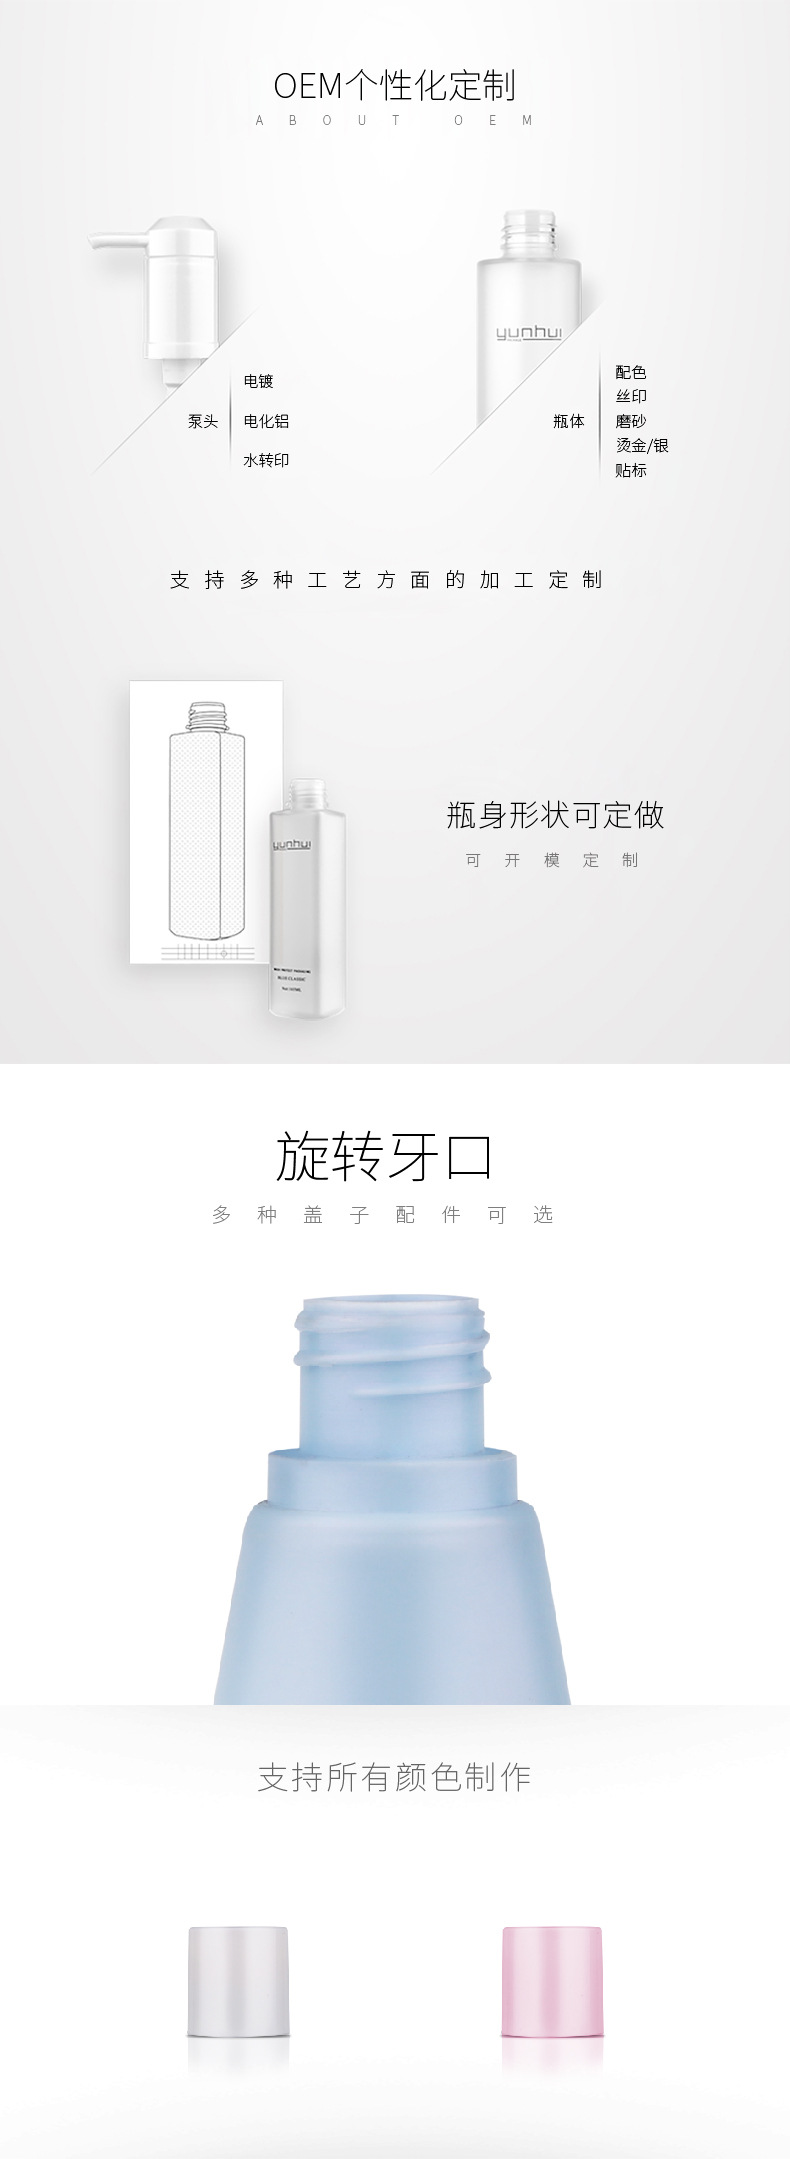 056 60ml洗护用品试用装旅行装PE塑料包装瓶